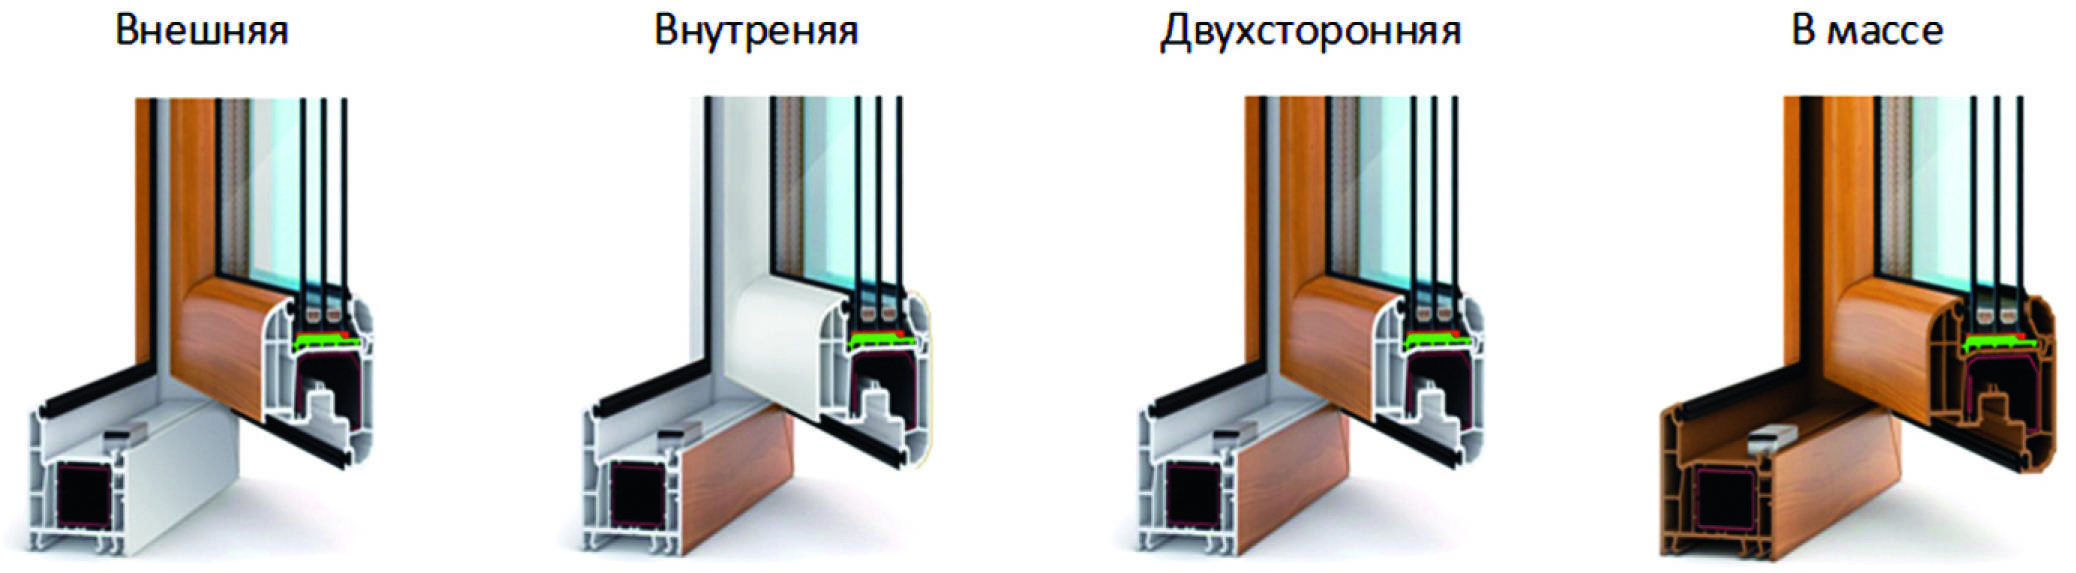 Ламинированные окна в интерьере: цвета оформления пластиковых изделий, видео и фото